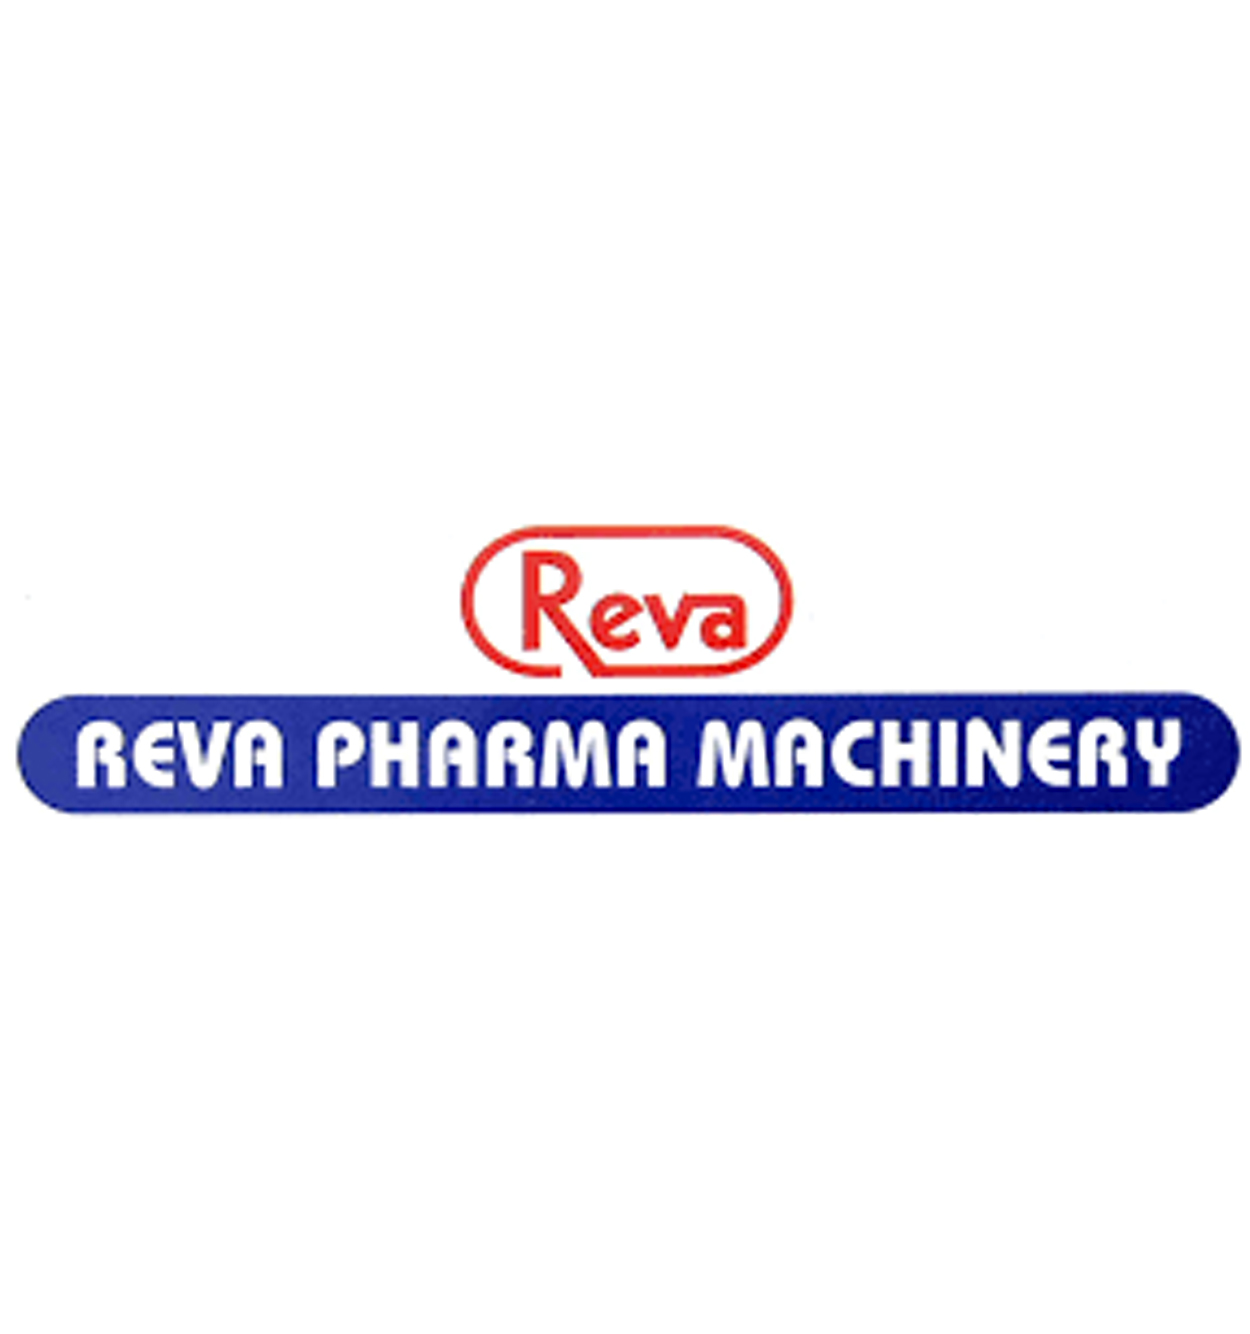 Reva Pharma